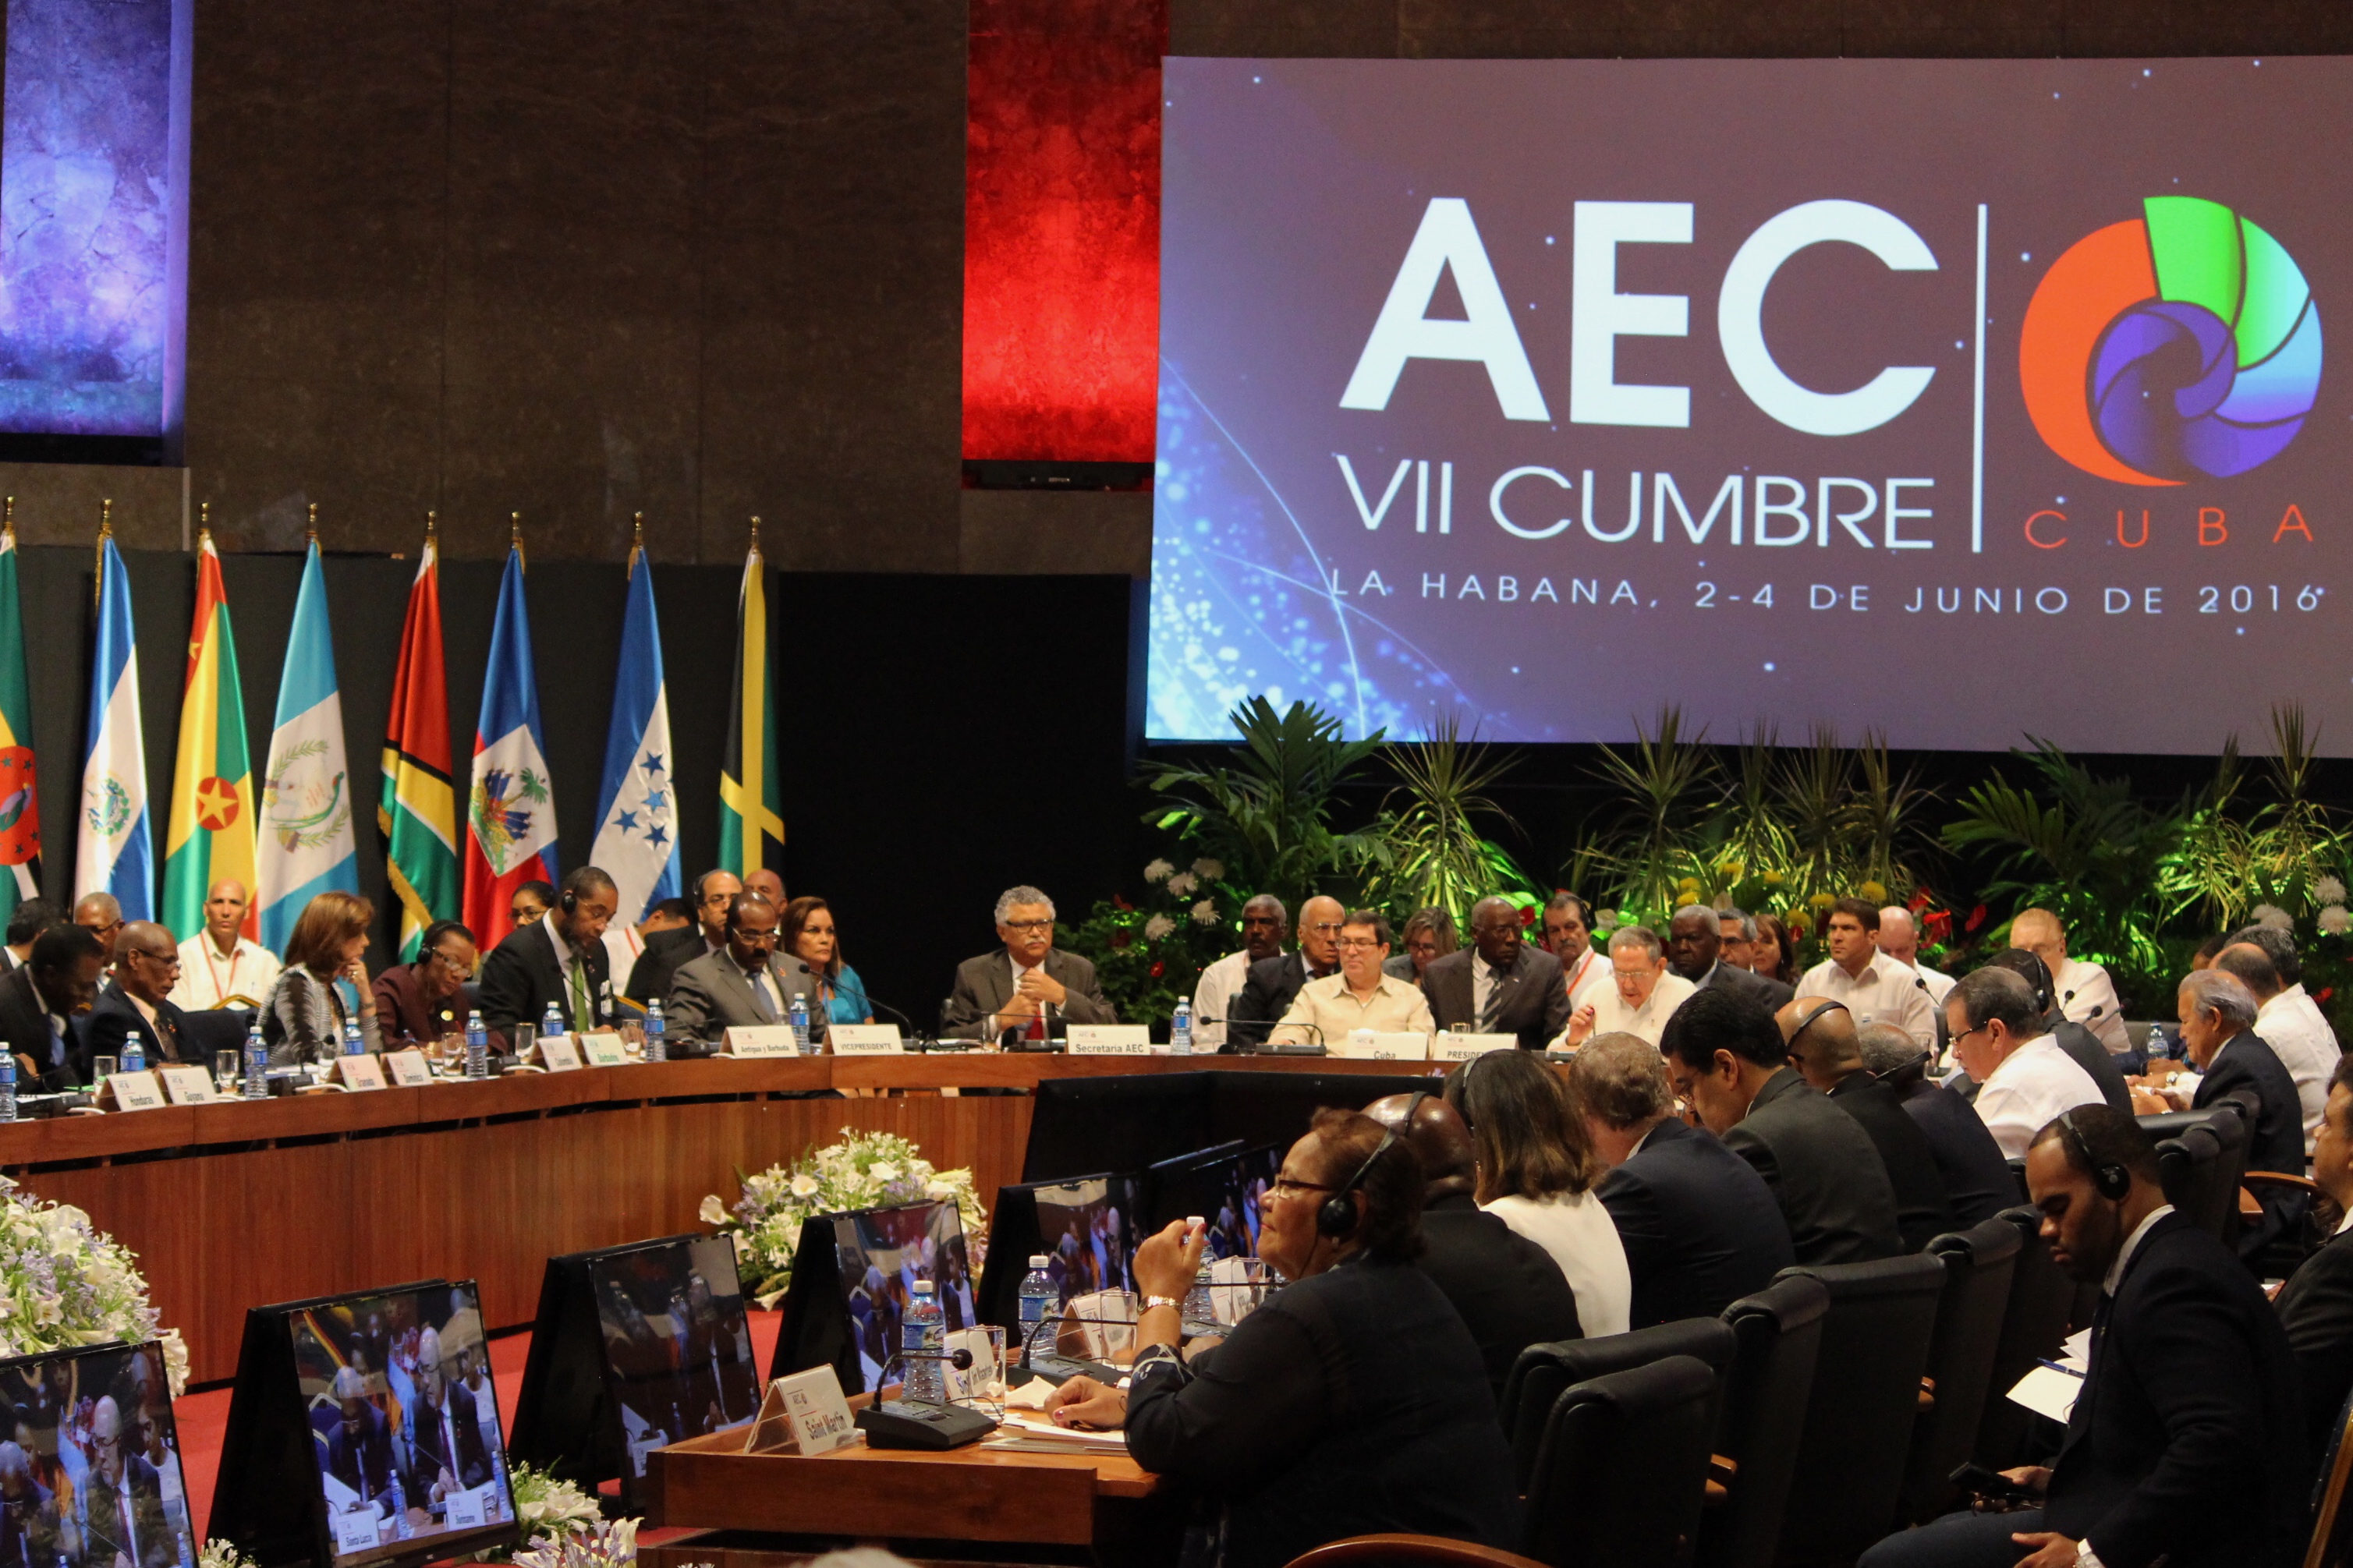 Secretario saliente de la AEC, Alfonso Múnera, agradeció a la Canciller Holguín por haberlo postulado al cargo